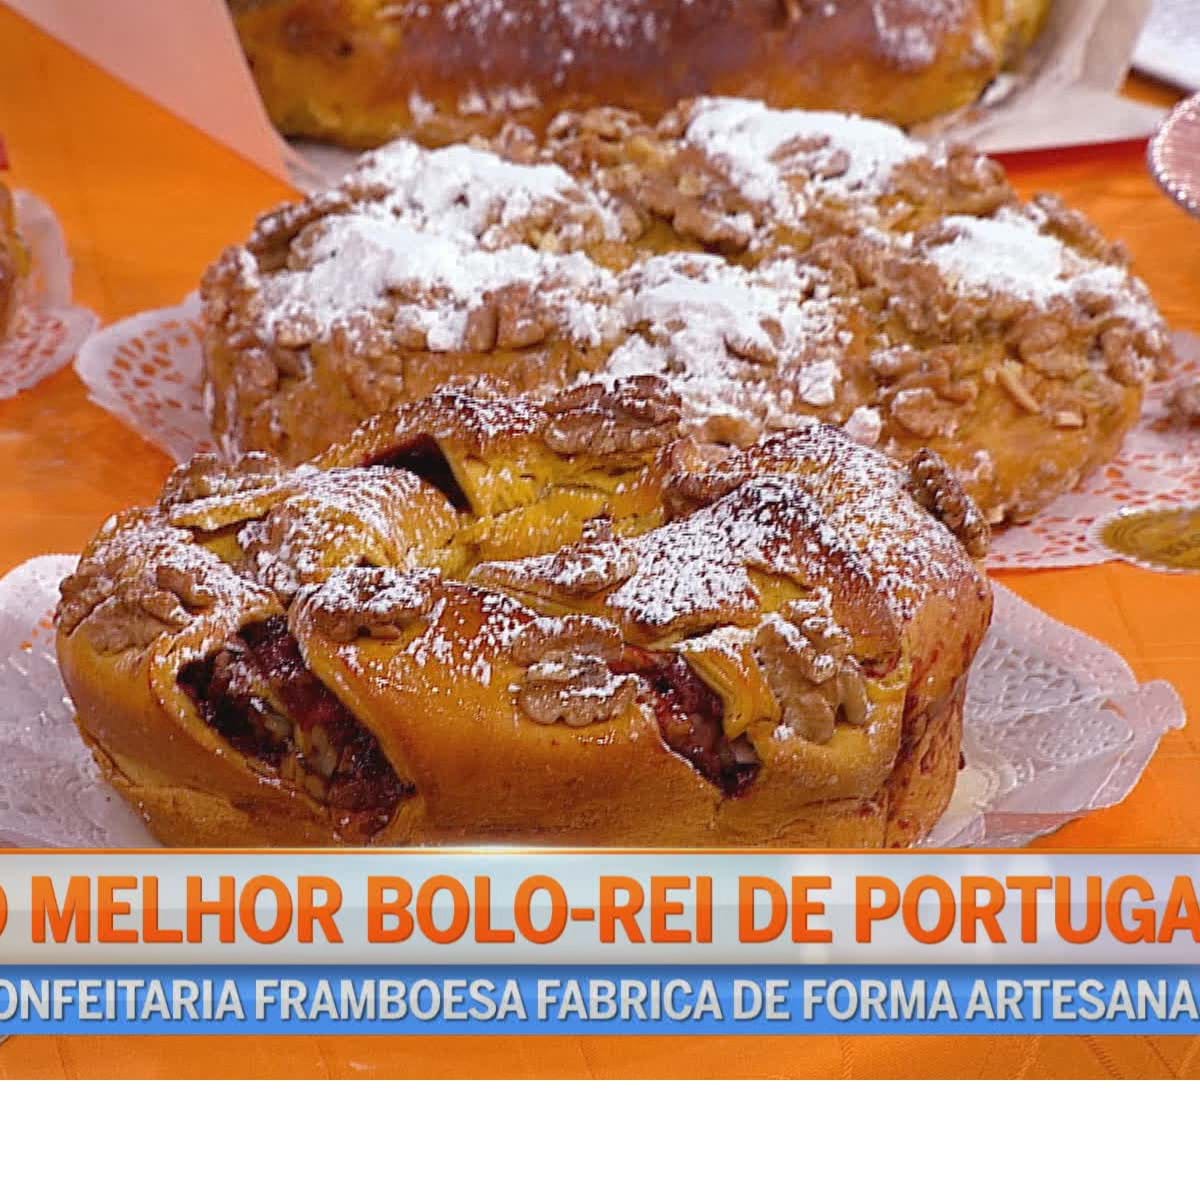 O Melhor Bolo-rei de Portugal é de Albergaria-a-Velha